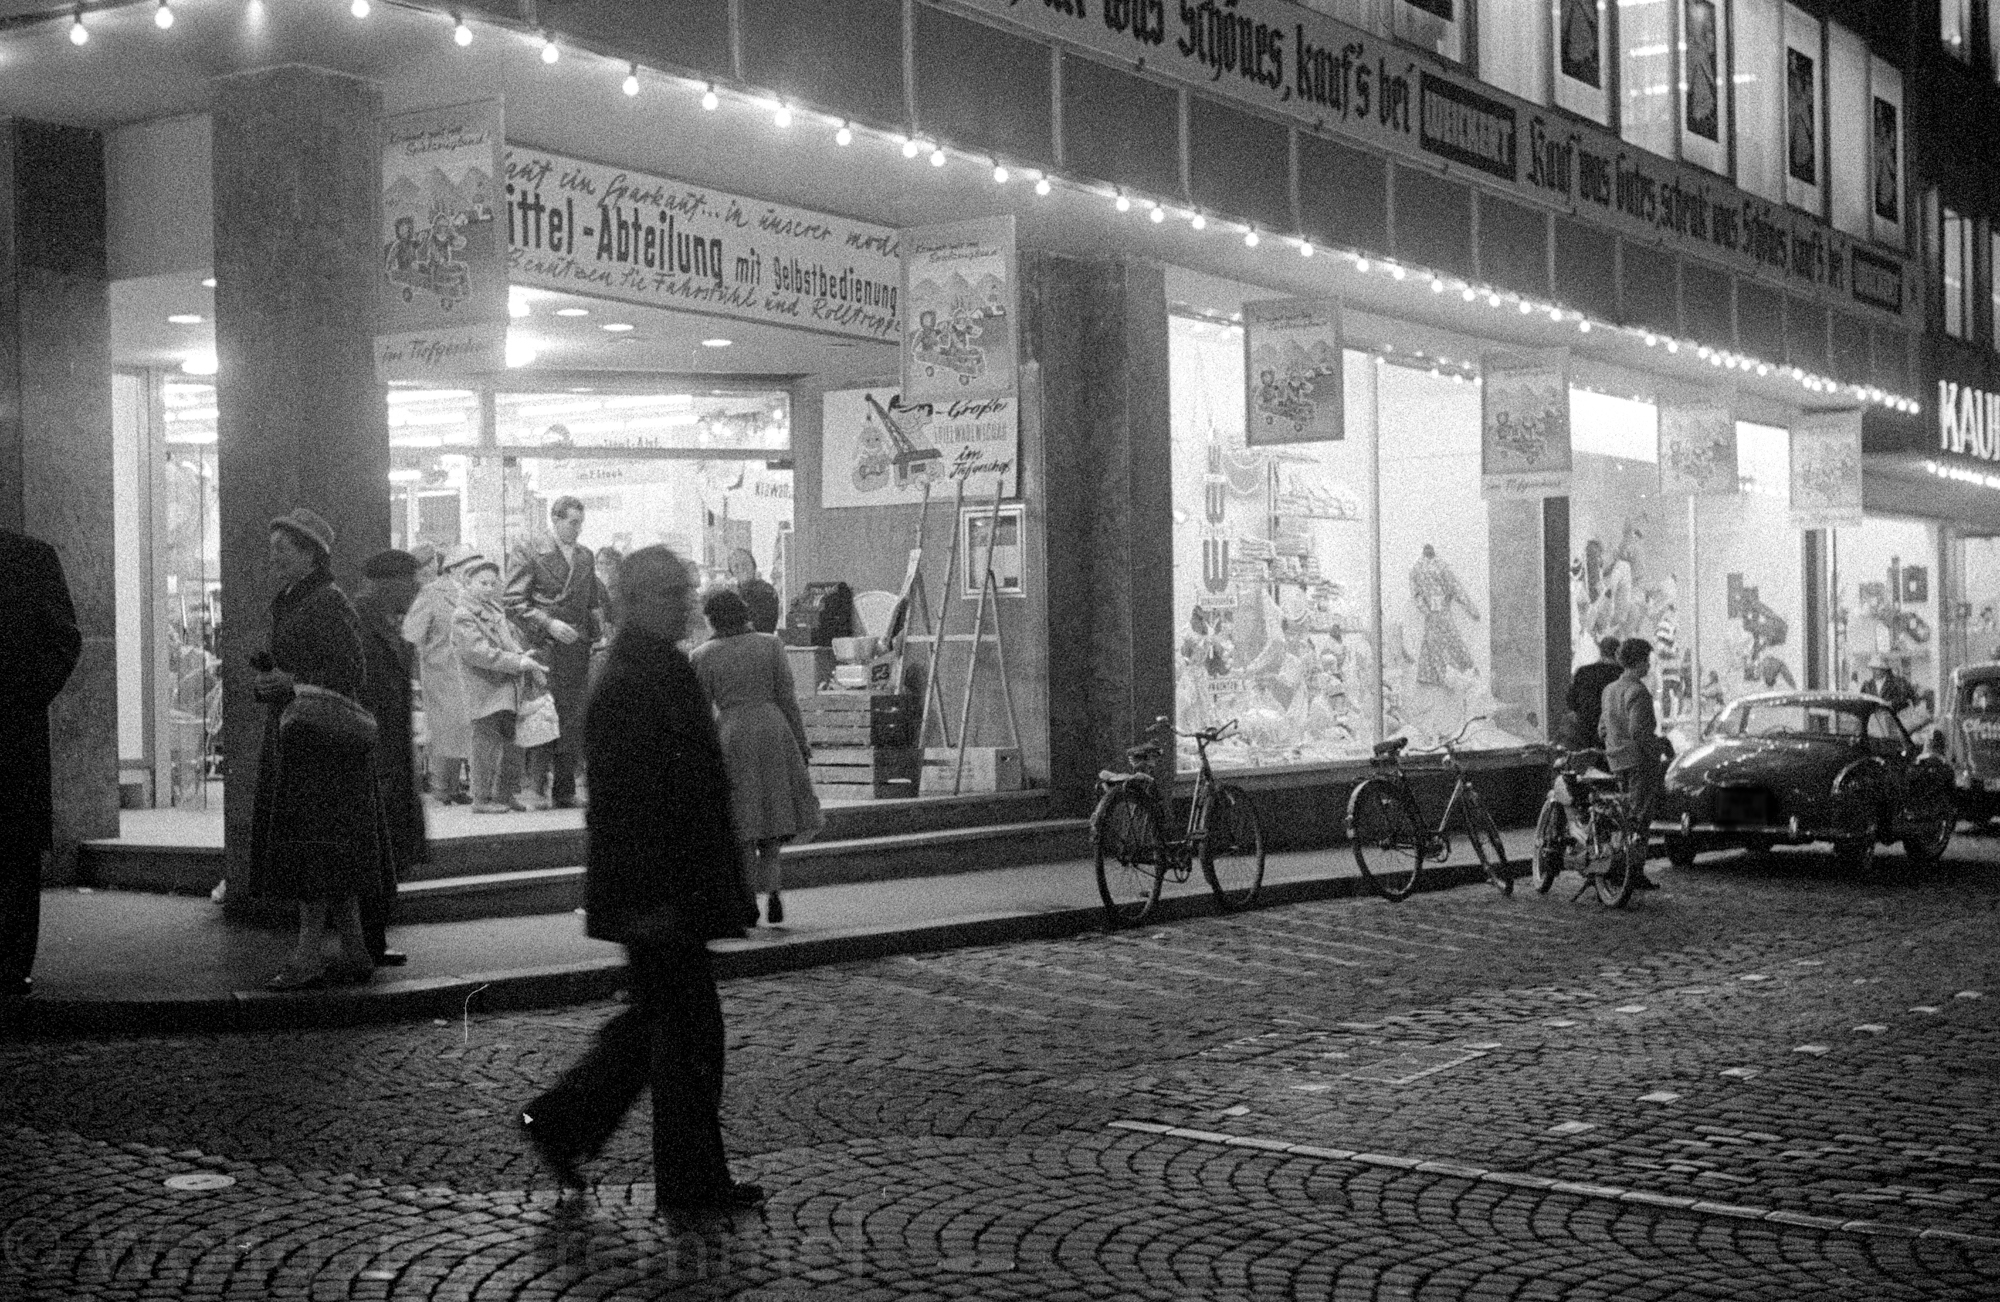 1960: Shopping at Weickert in Neustadt